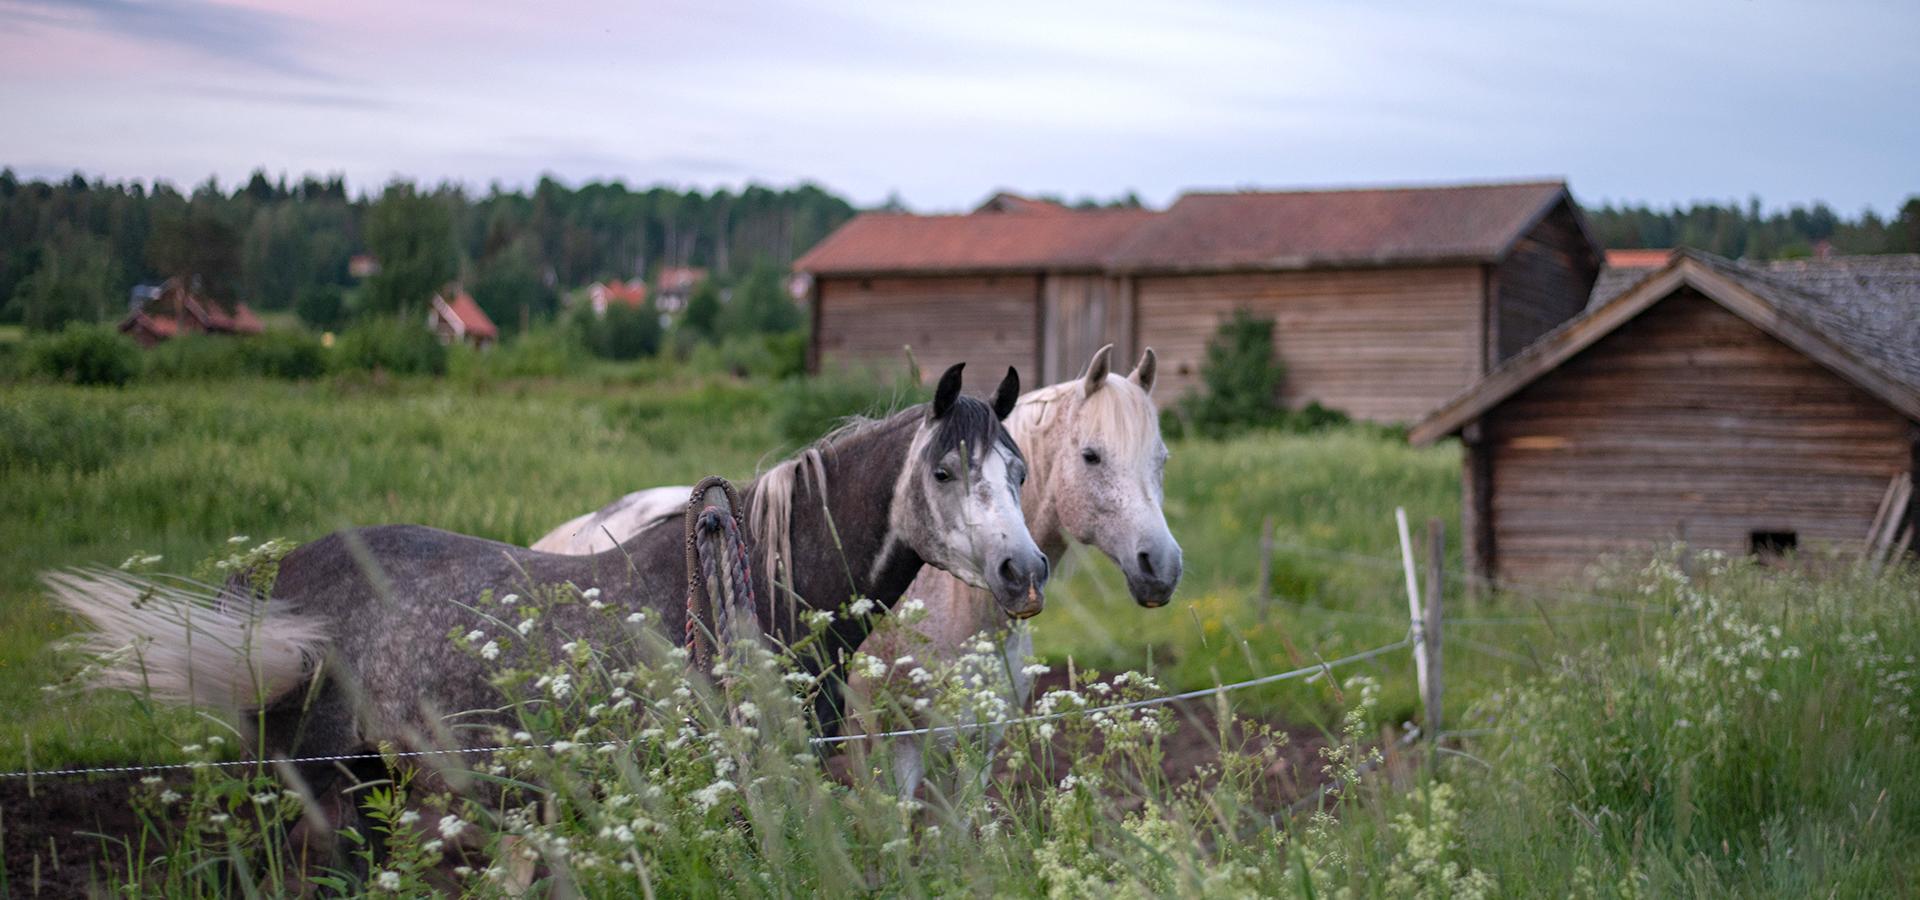 Två hästar på en sommaräng med lador i bakgrunden.